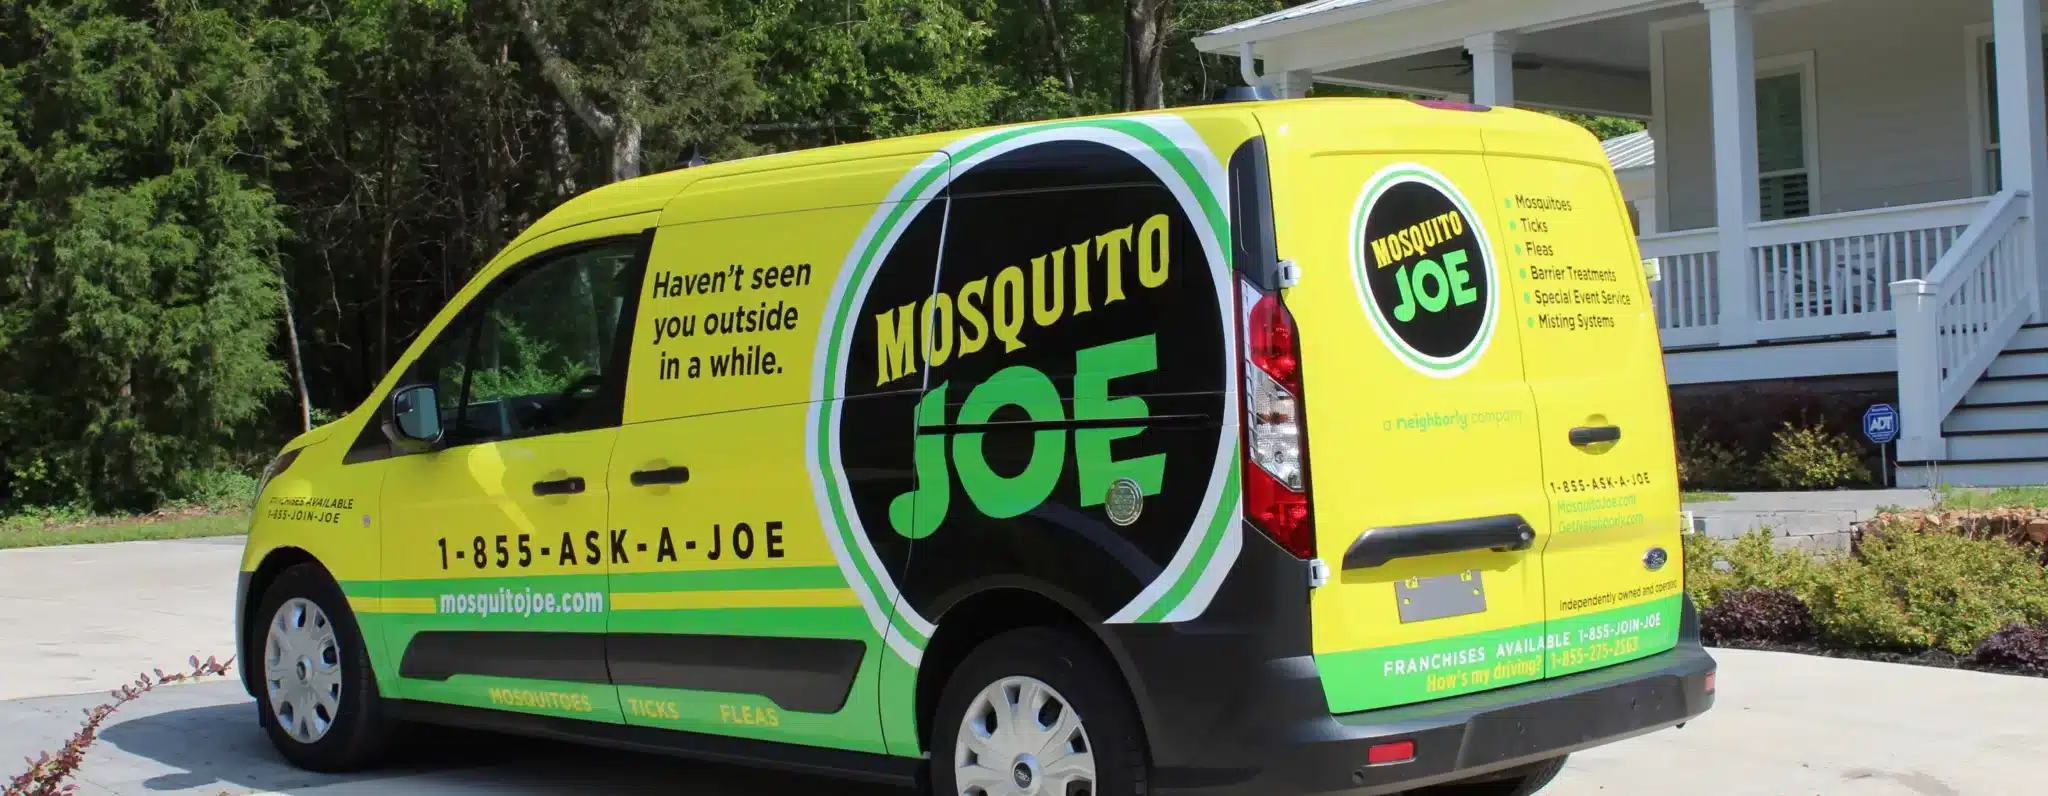 Mosquito Joe Franchise Kostnader, fortjeneste og muligheter